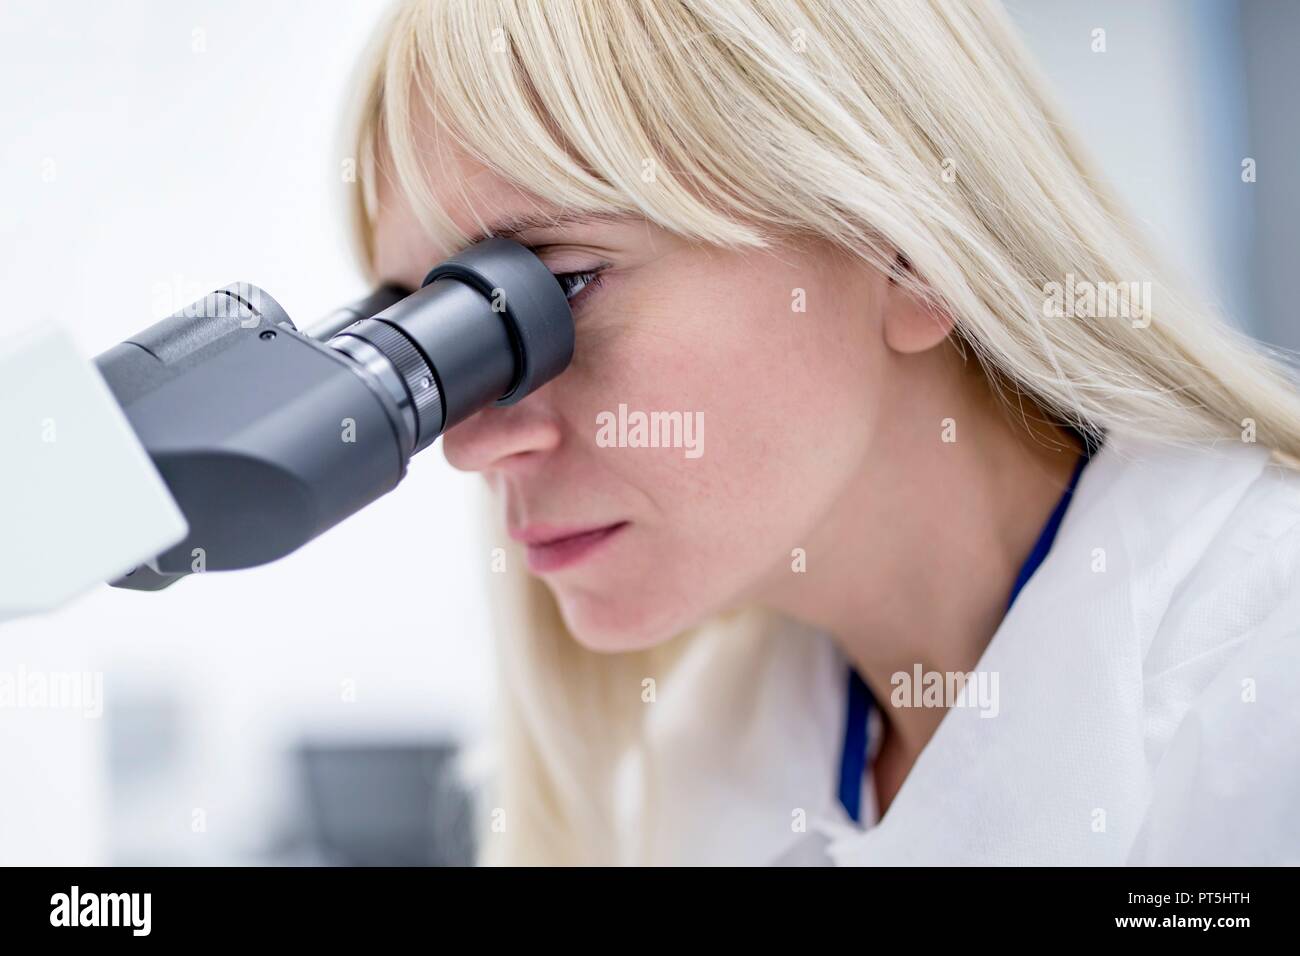 Female laboratory technician using microscope in the lab. Stock Photo